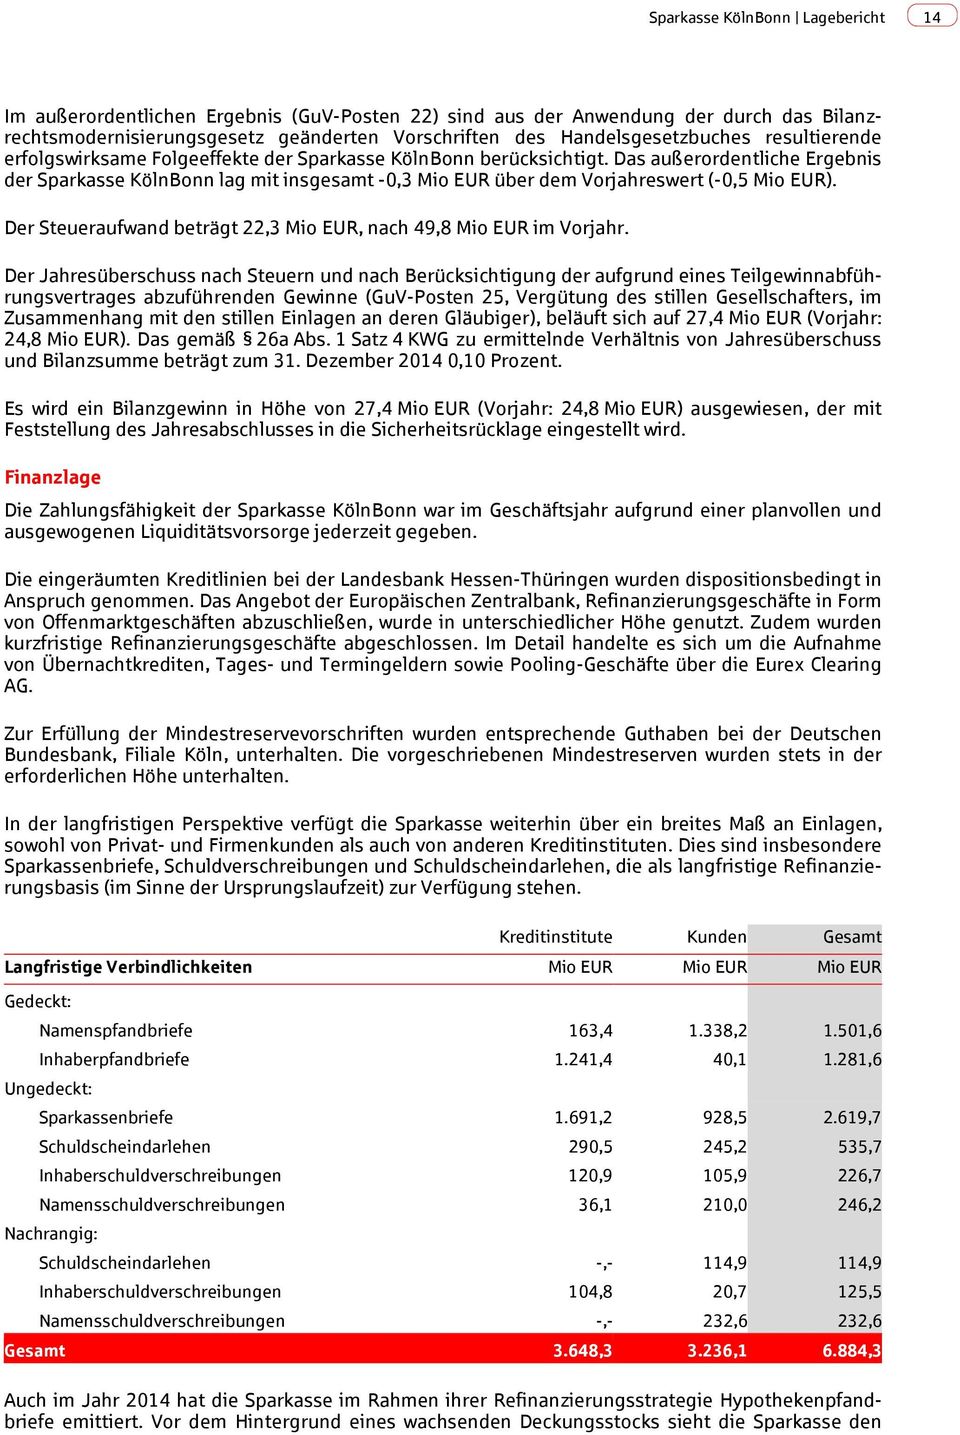 Das außerordentliche Ergebnis der Sparkasse KölnBonn lag mit insgesamt -0,3 Mio EUR über dem Vorjahreswert (-0,5 Mio EUR). Der Steueraufwand beträgt 22,3 Mio EUR, nach 49,8 Mio EUR im Vorjahr.